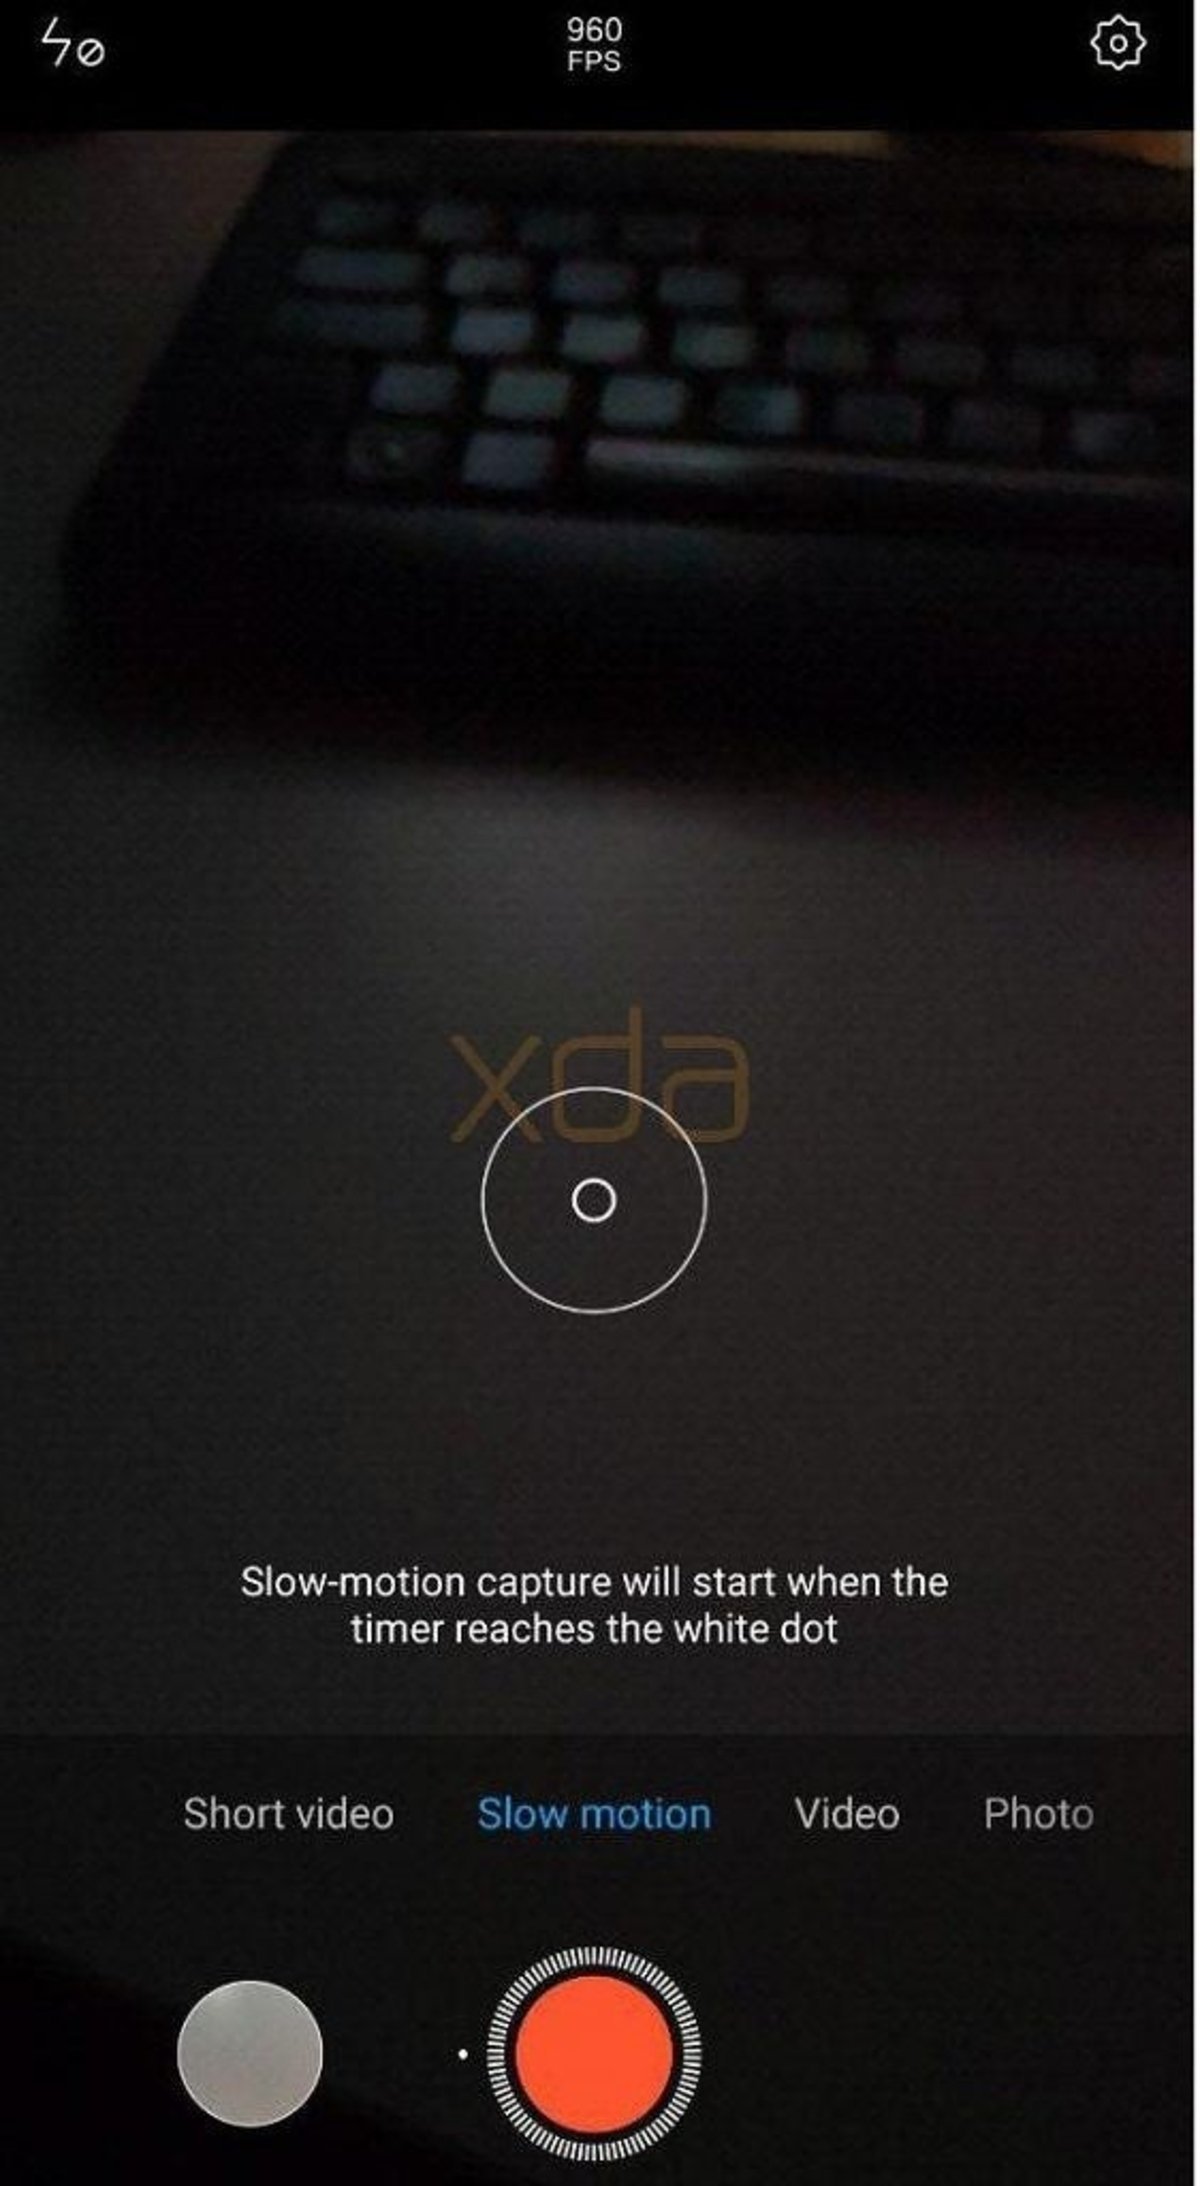 Grabación de vídeo en 'slow motion' a 960FPS, la sorpresa de Xiaomi para su Mi MIX 3